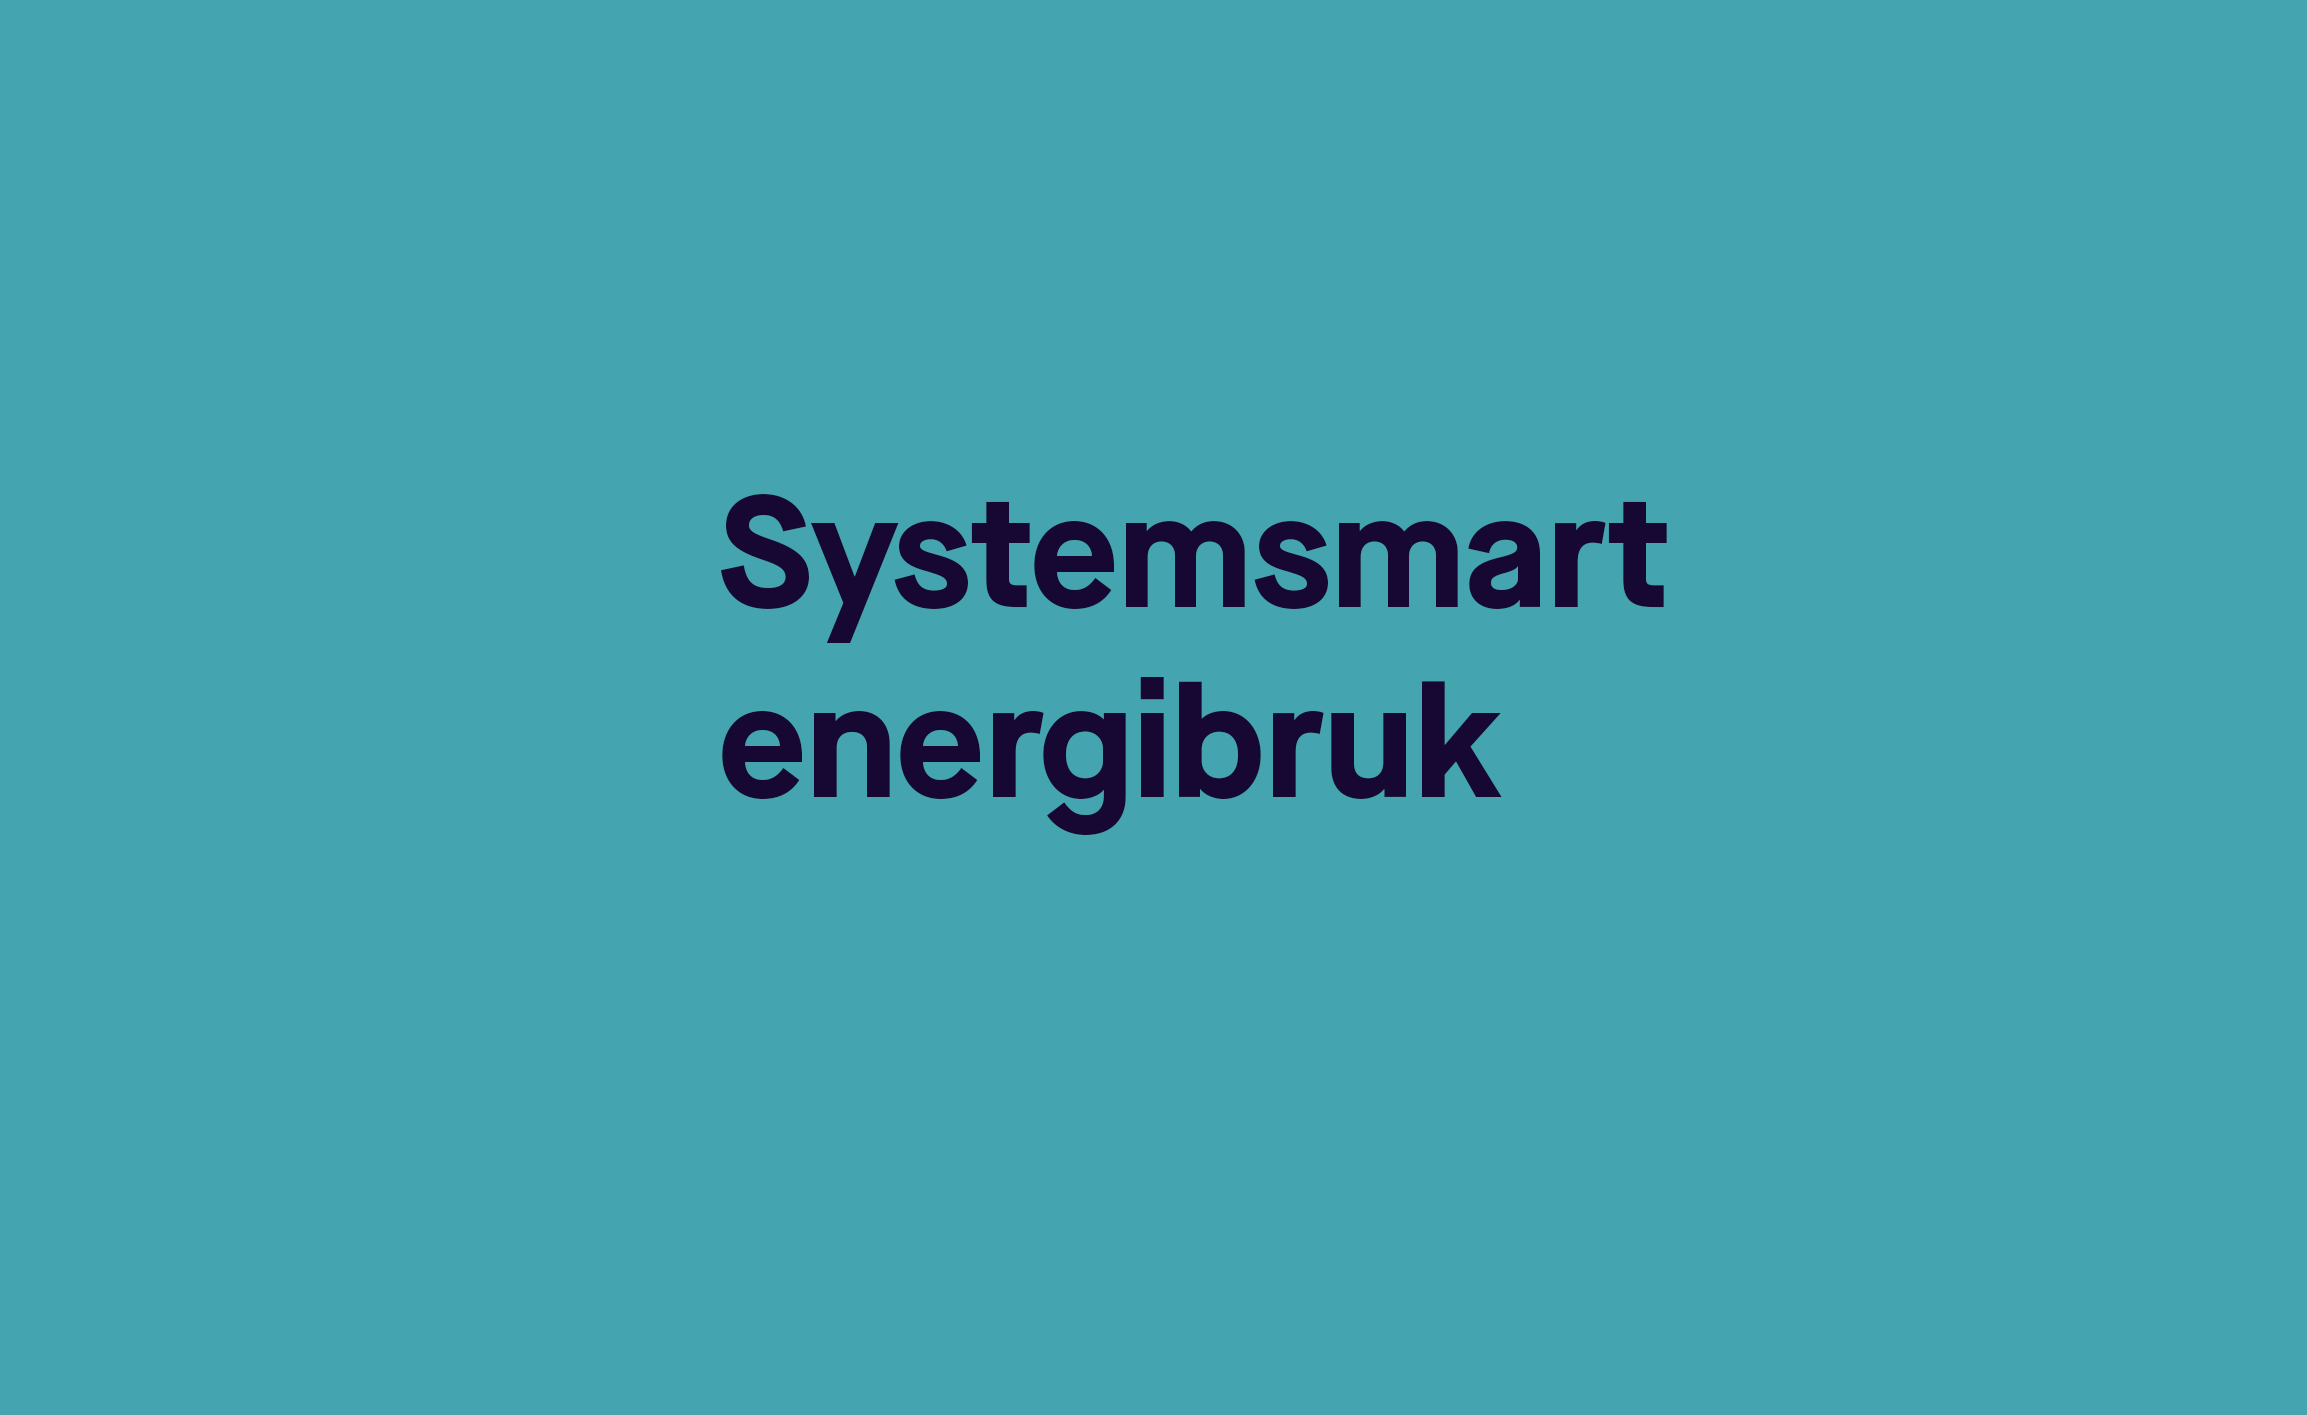 Systemsmart energibruk med nytt case